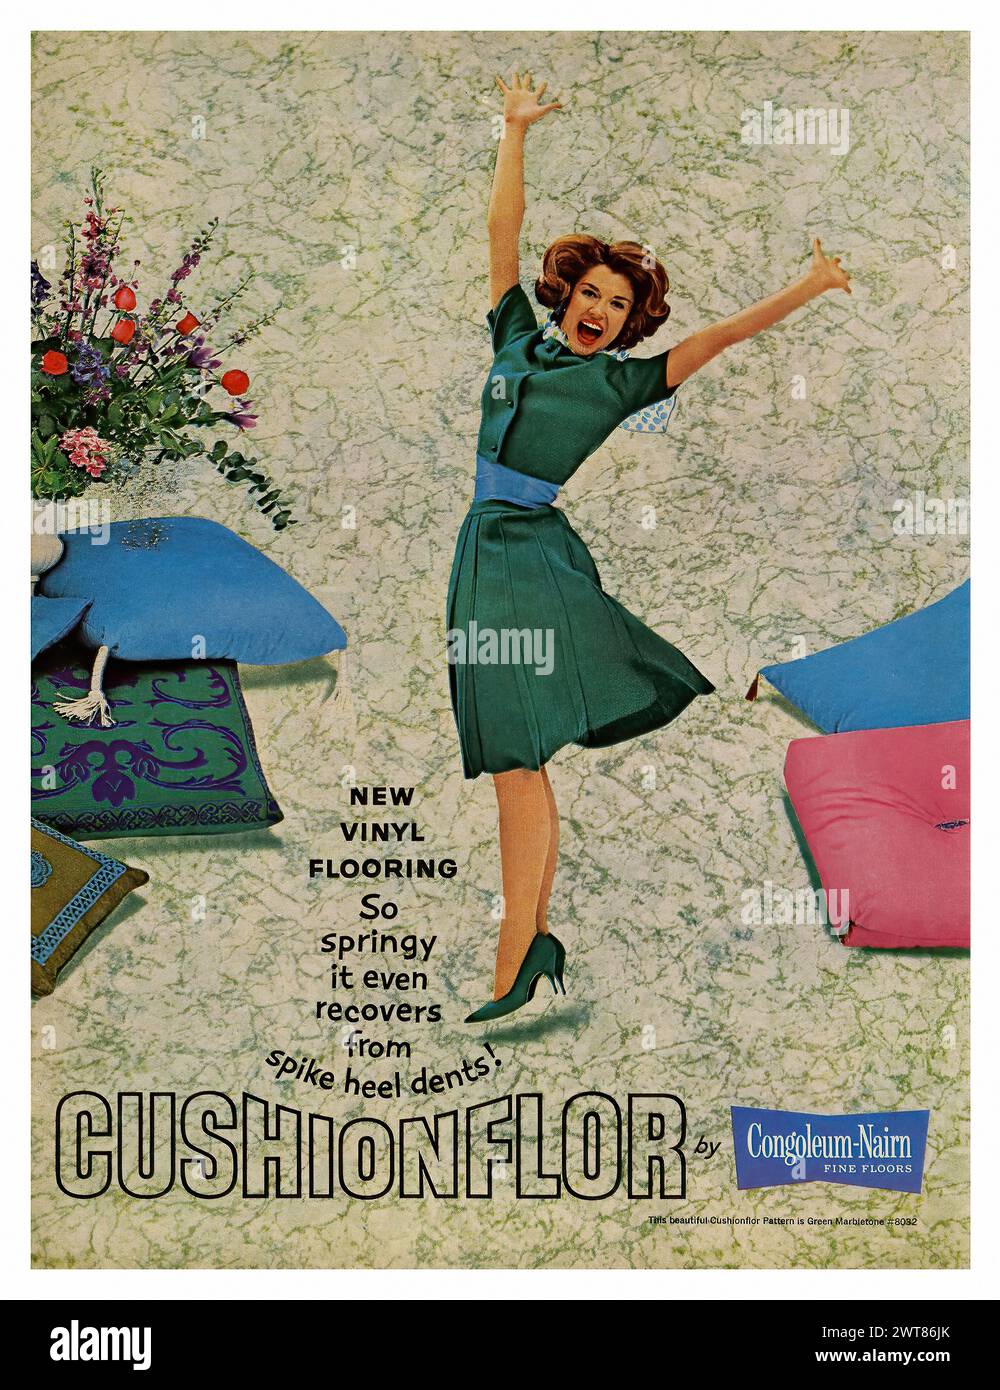 Cushionflor (1963) - pubblicità per riviste americane d'epoca Foto Stock